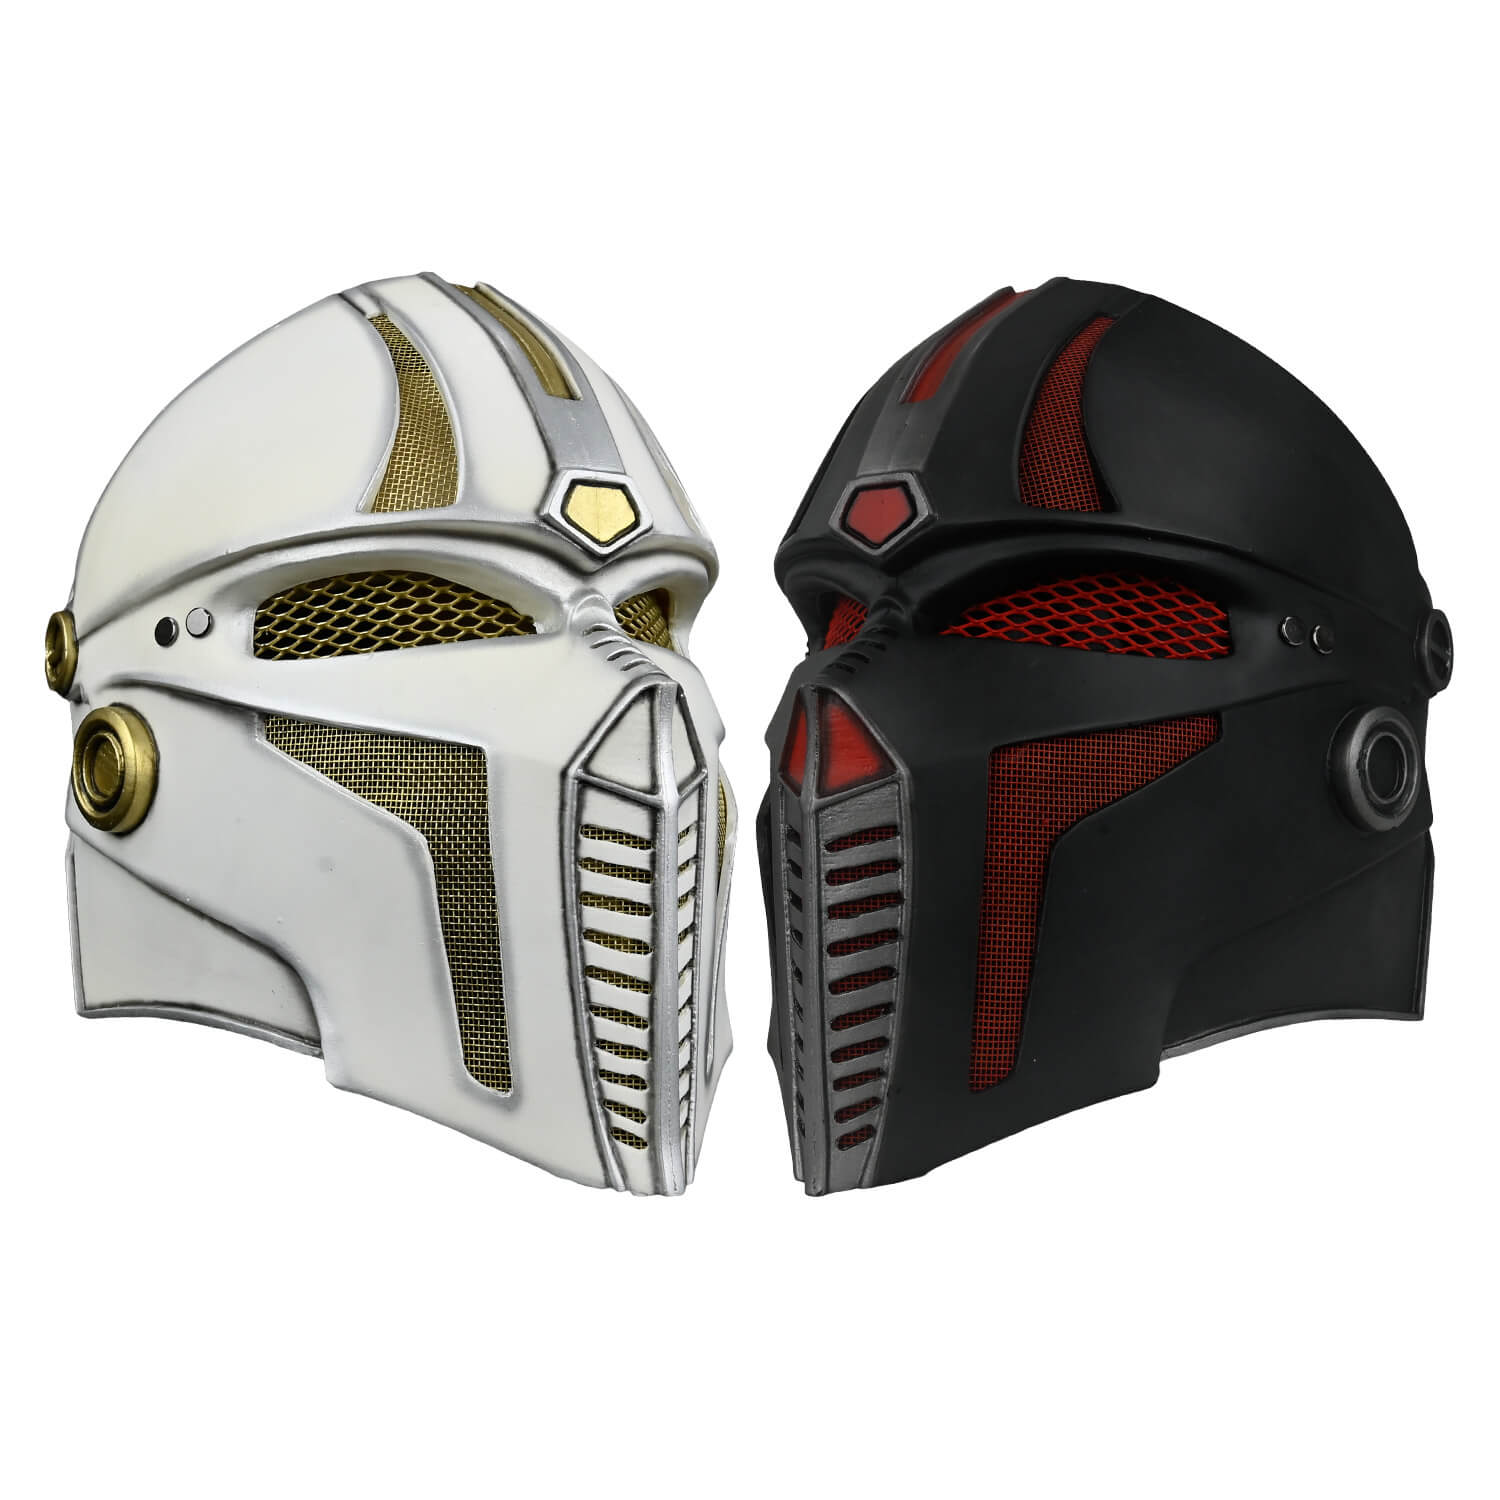 futuristic knight helmet